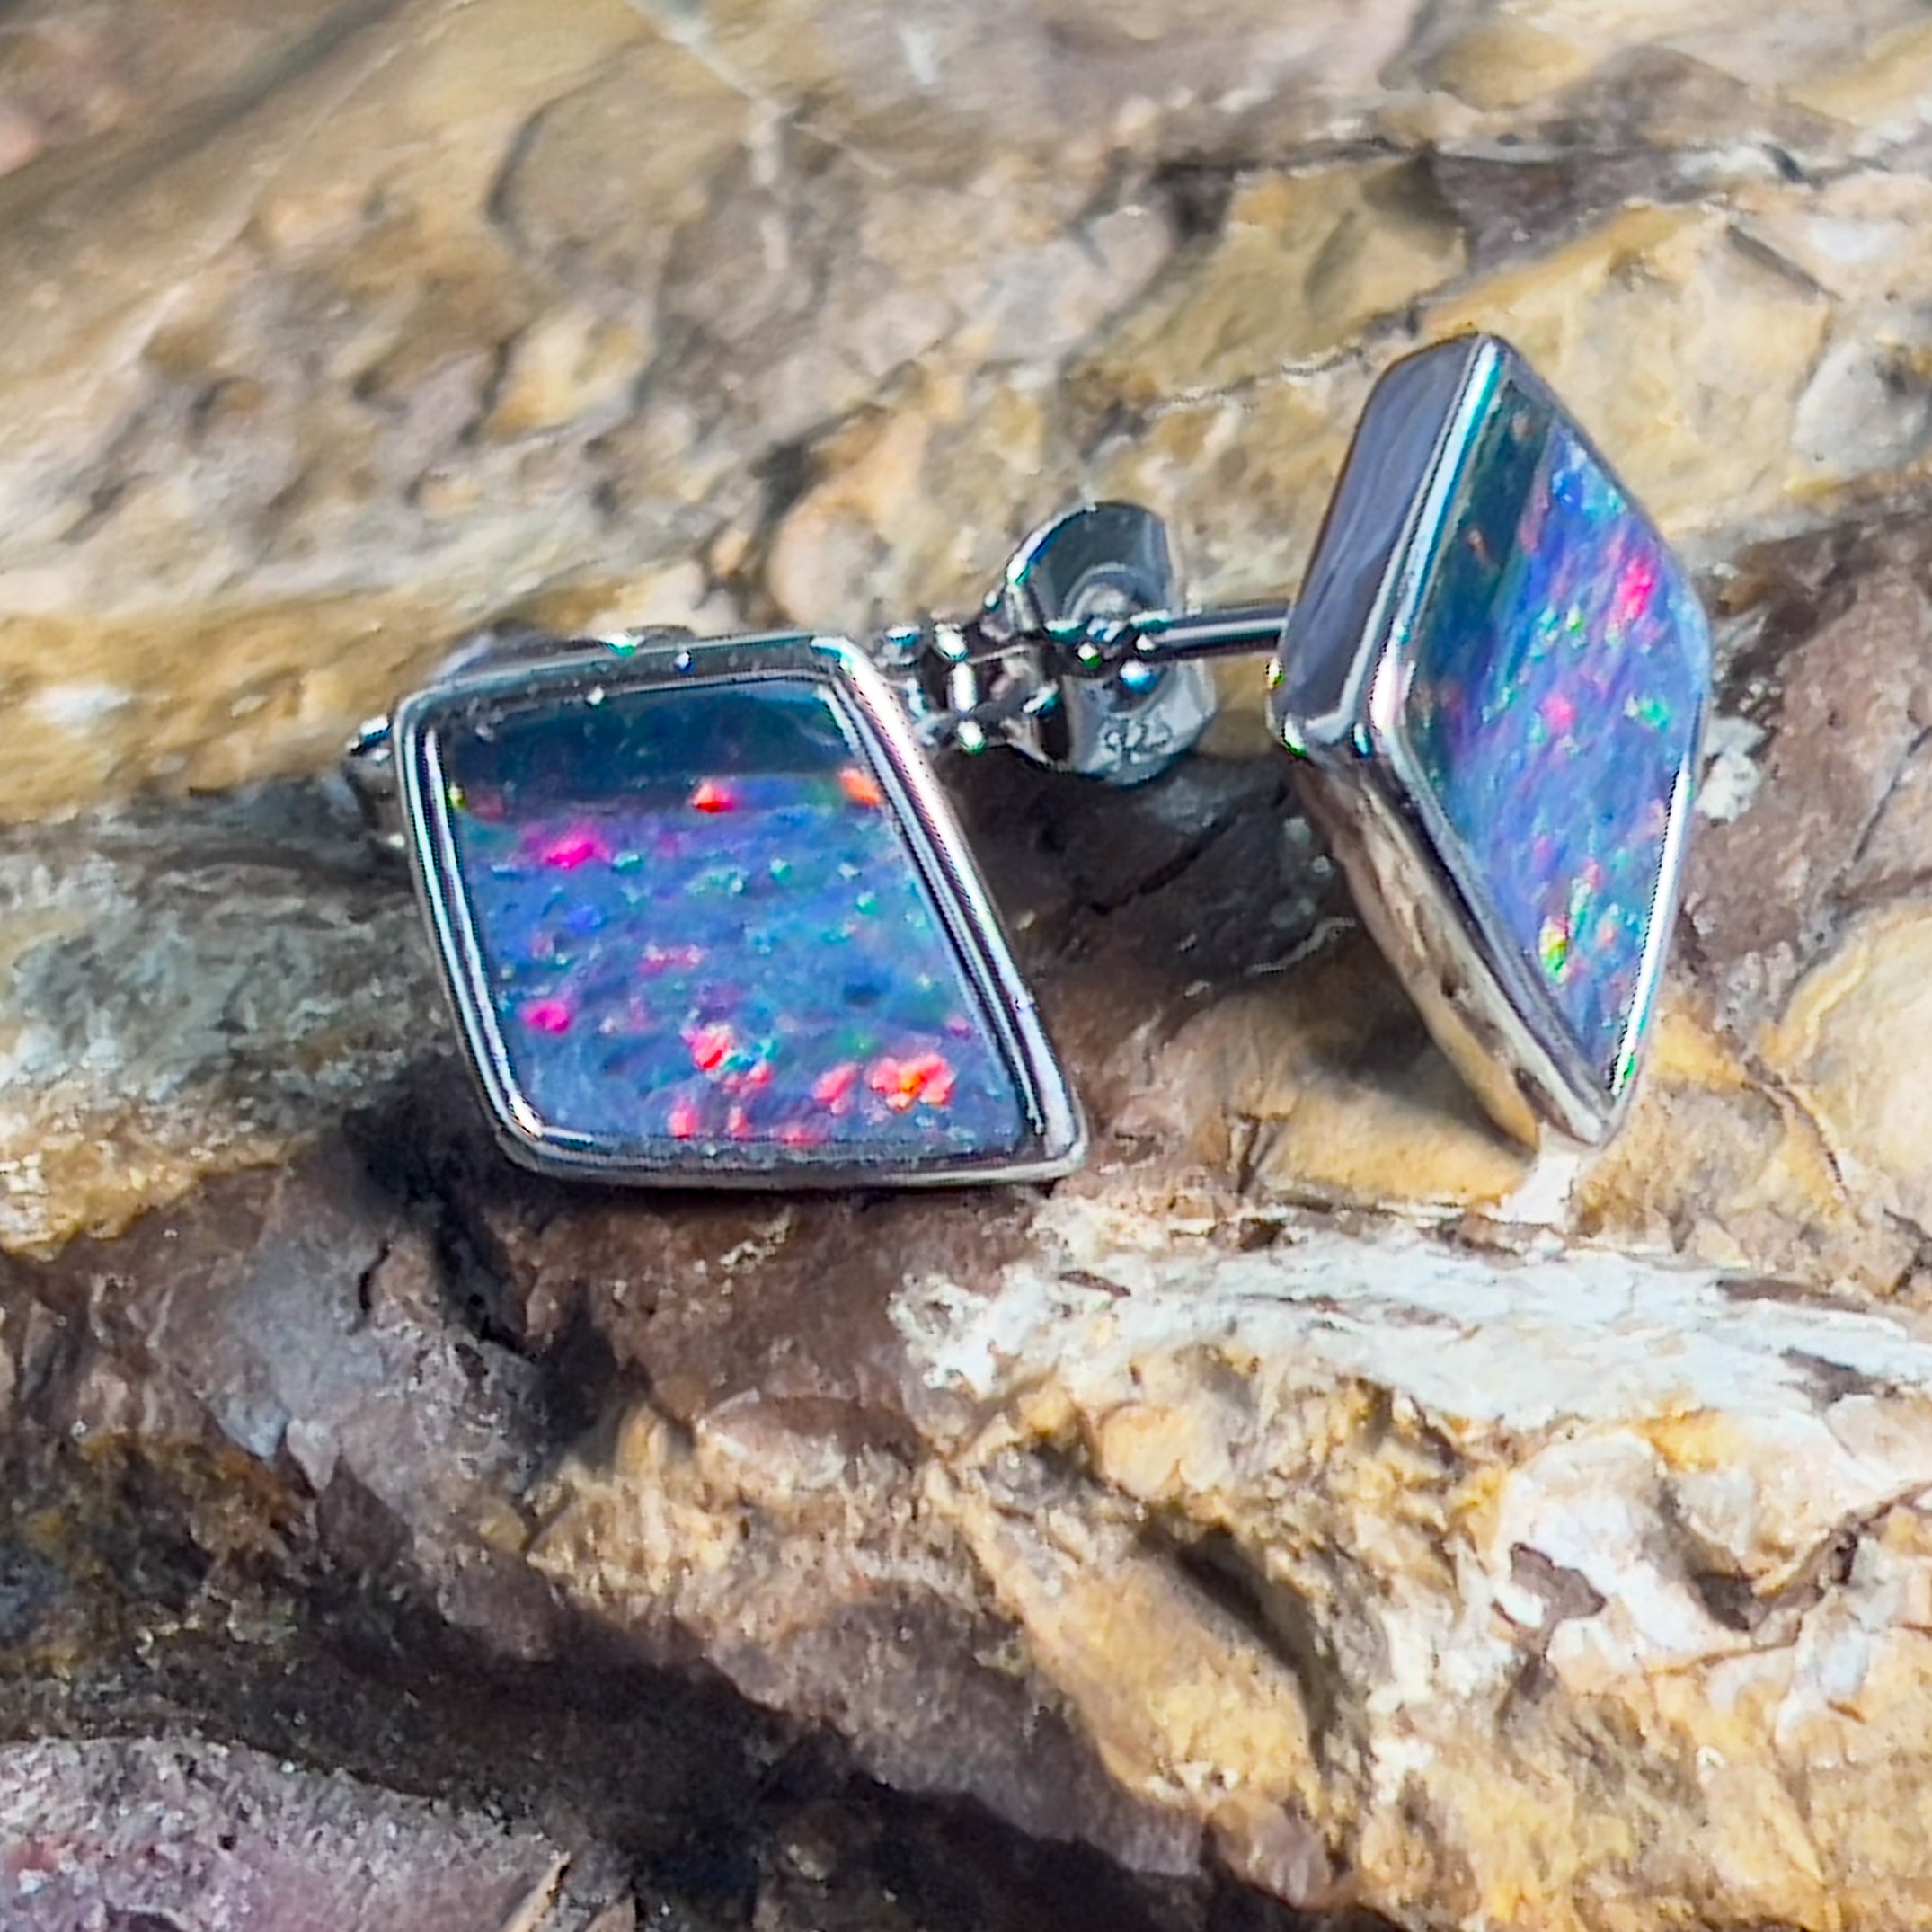 Sterling Silver diamond shape Opal doublet studs - Masterpiece Jewellery Opal & Gems Sydney Australia | Online Shop